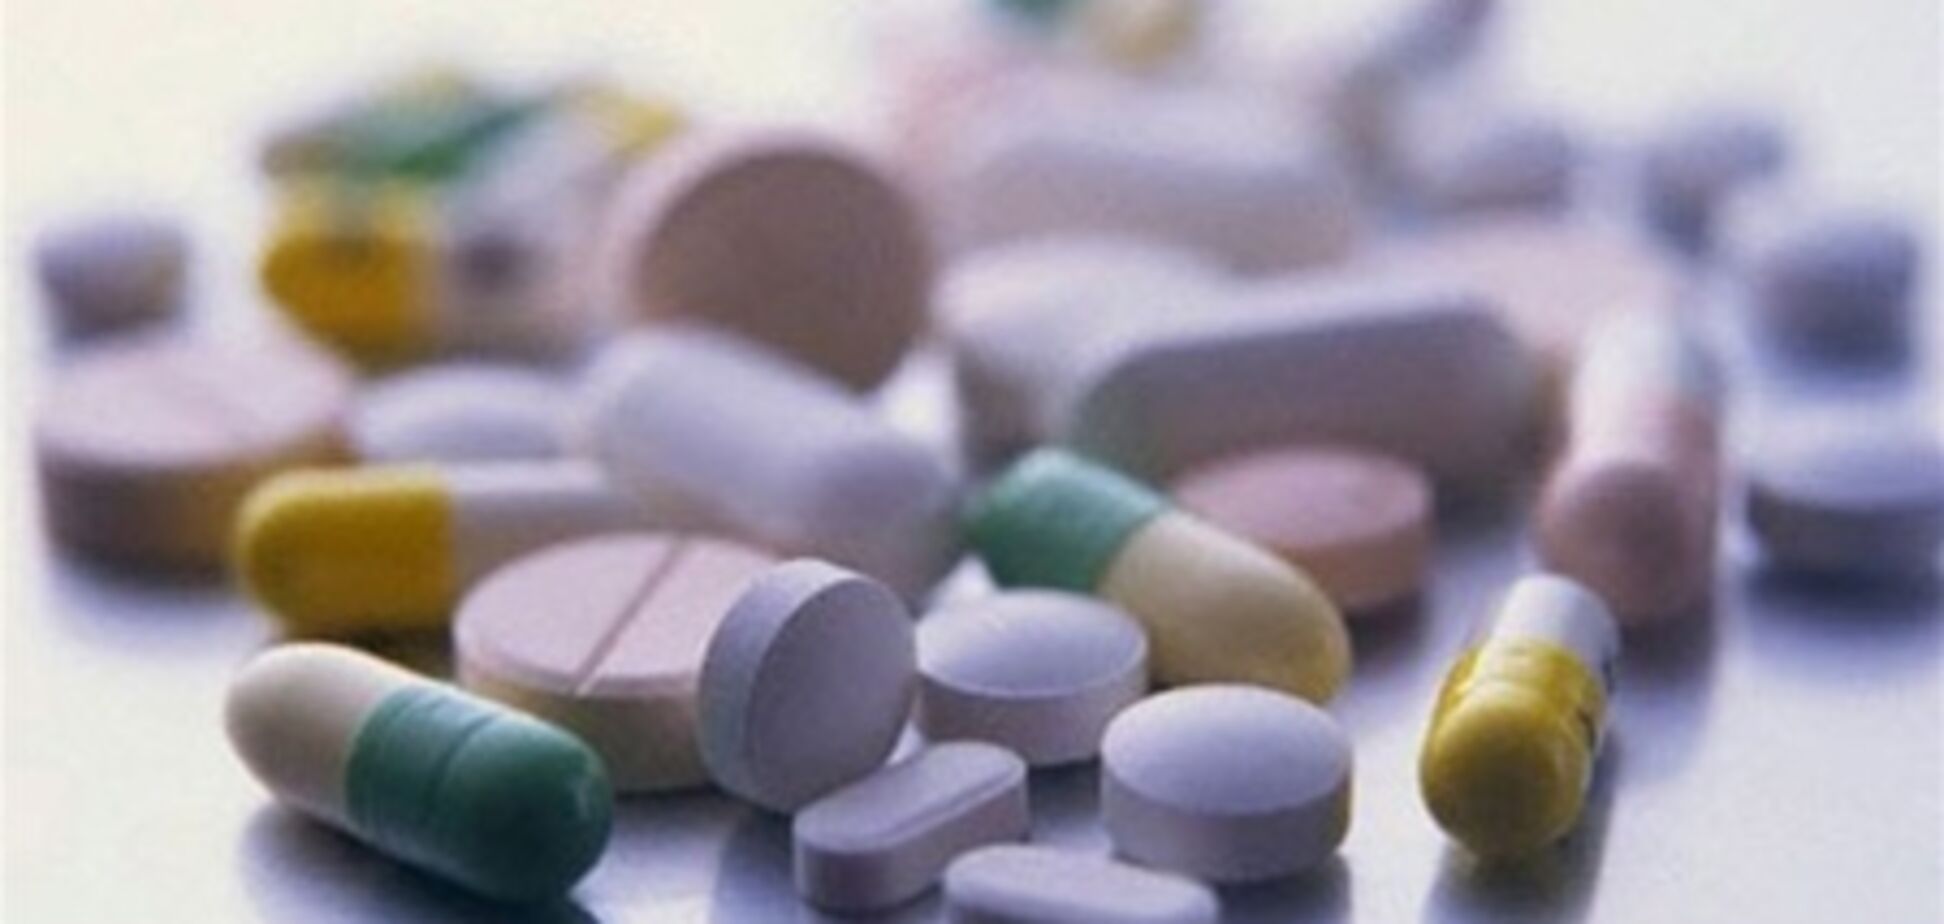 Дистрибутора Heel в Украине обвиняют в фальсификации лекарств